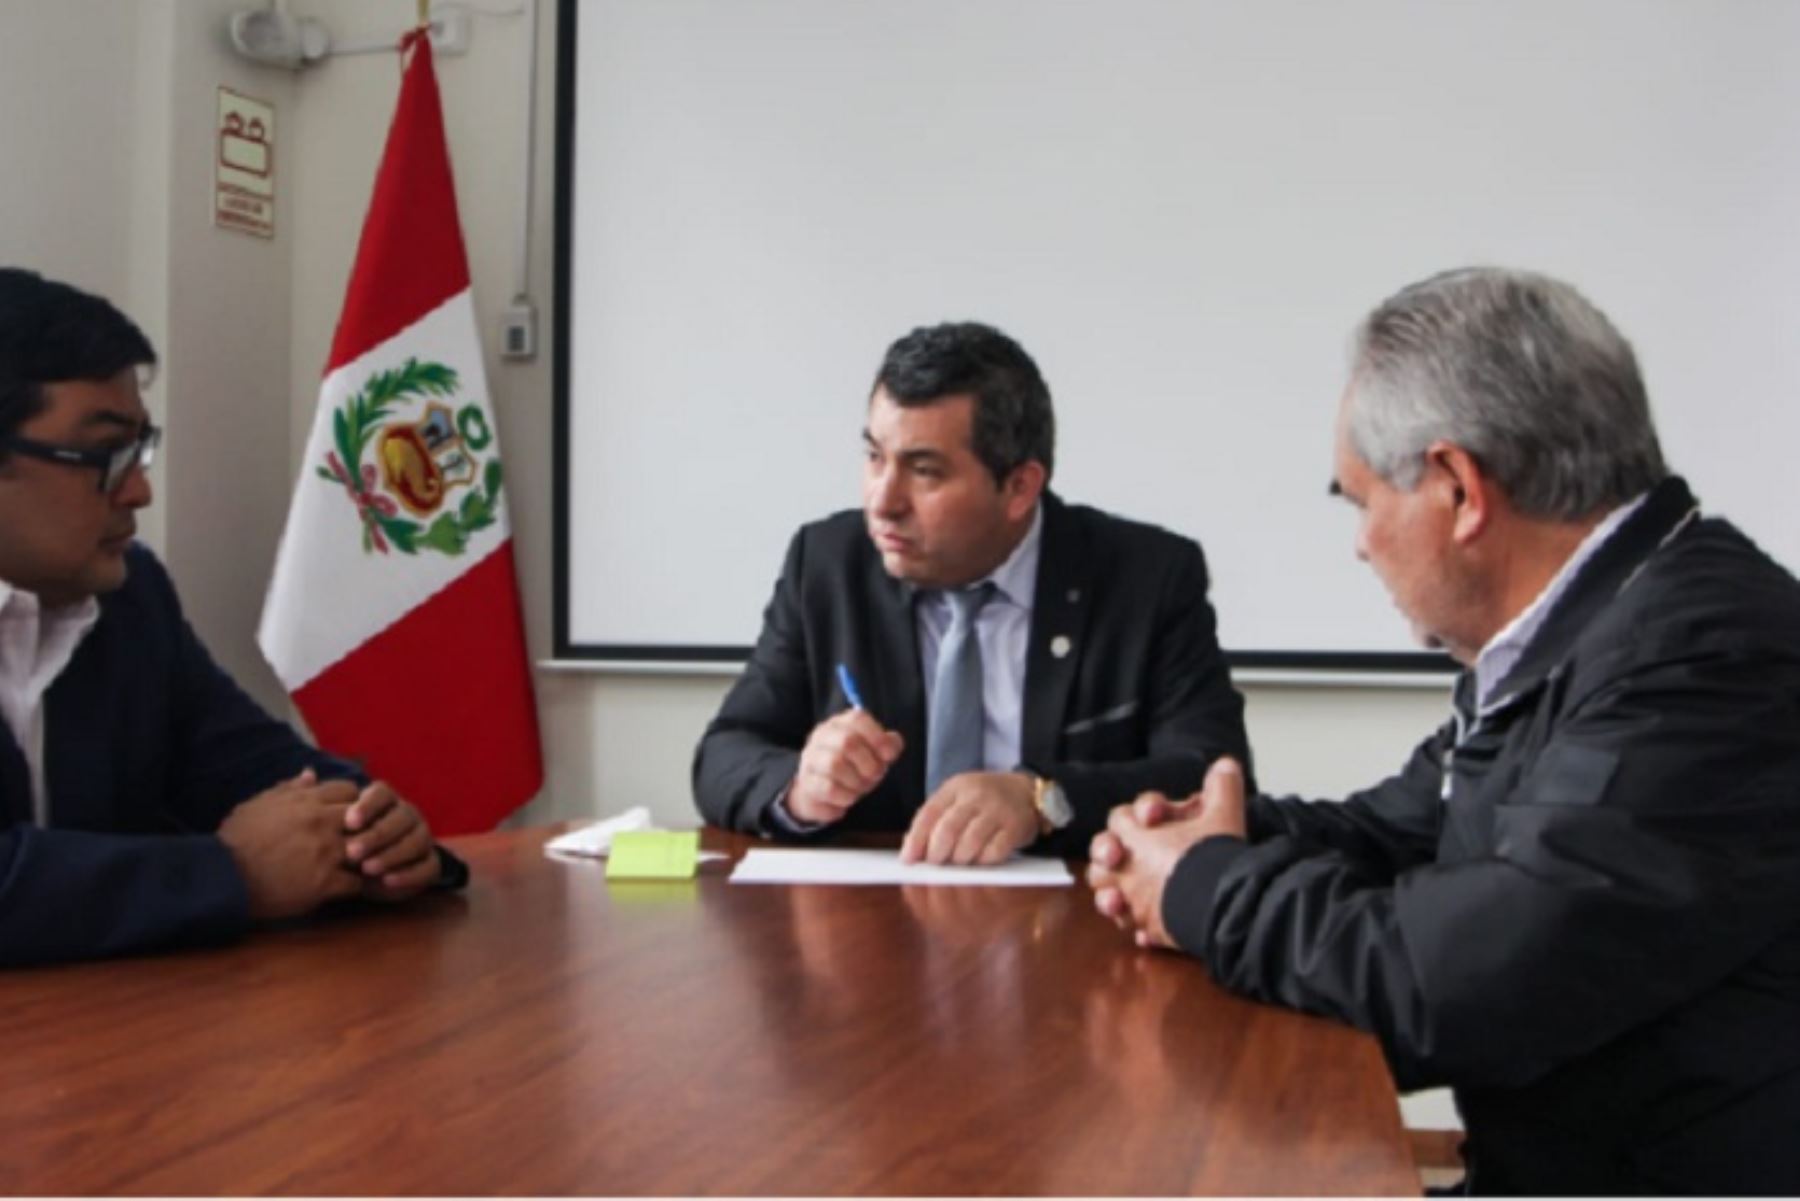 El director ejecutivo de la ARCC, Robert López, ratificó su compromiso de acelerar los proyectos en ejecución y pendientes de financiamiento, así como trabajar articuladamente con los gobiernos regionales y locales.